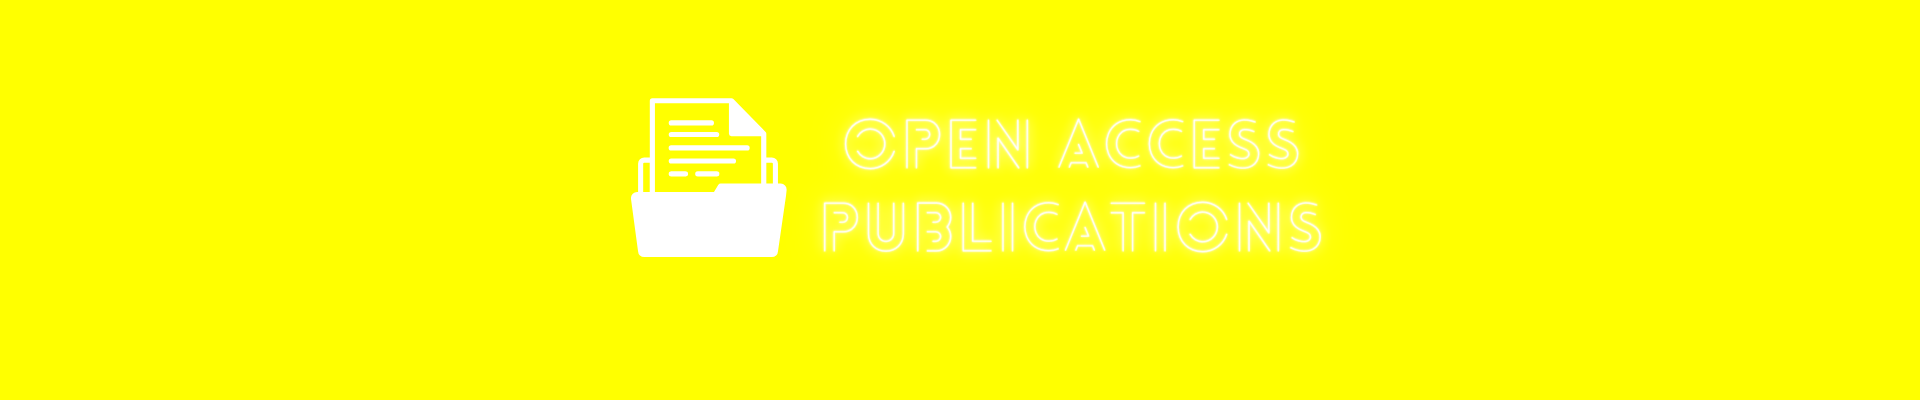 Open Access Publication